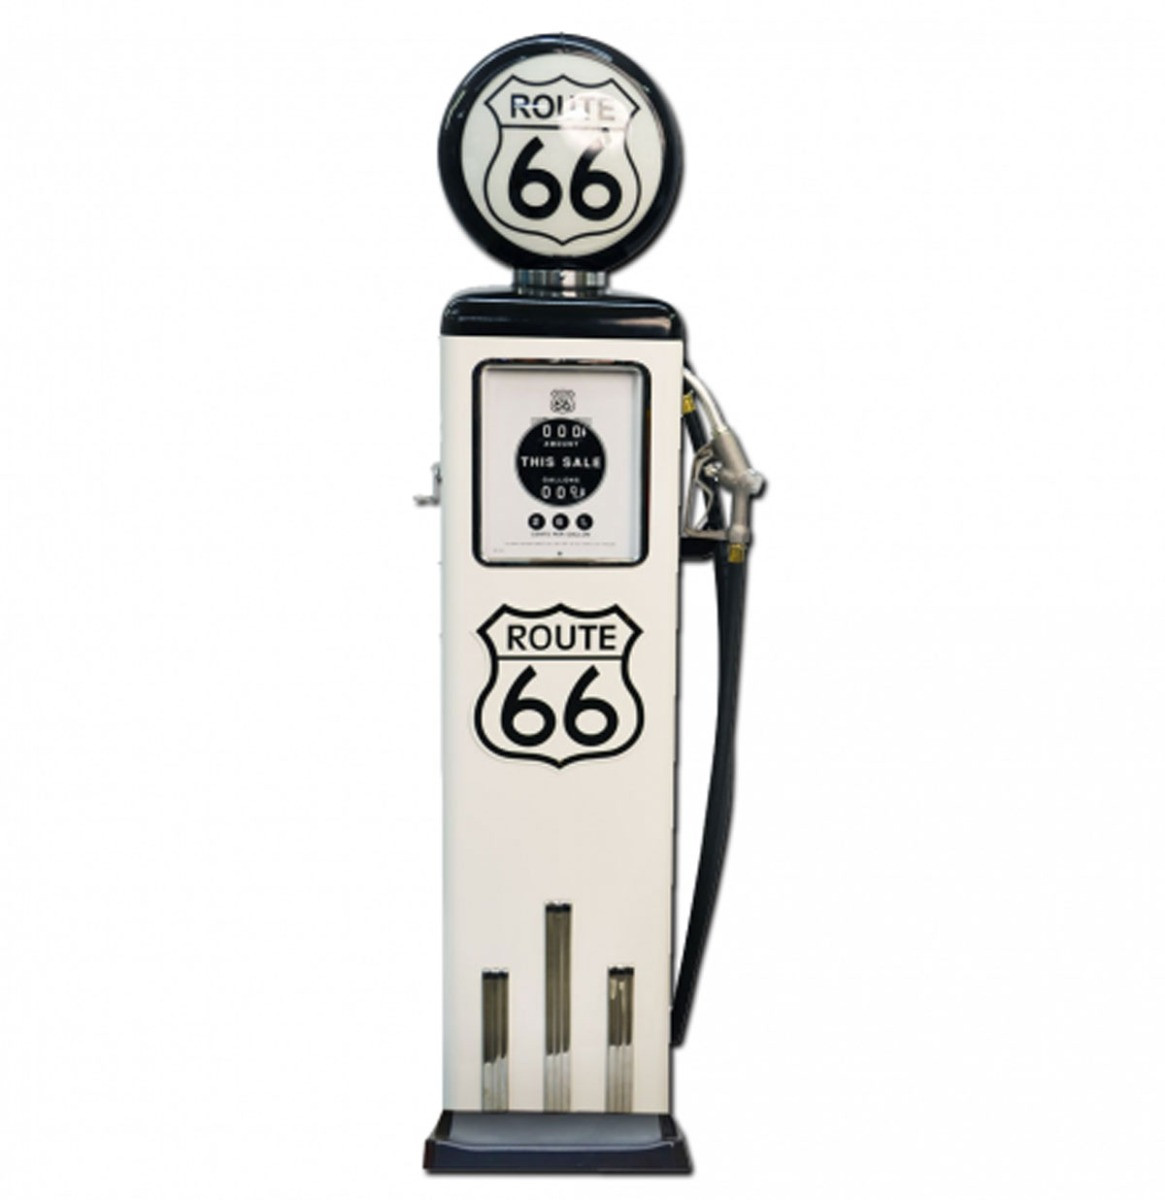 Route 66 8 Ball Elektrische Benzinepomp Met Voet - Wit & Zwart - Reproductie